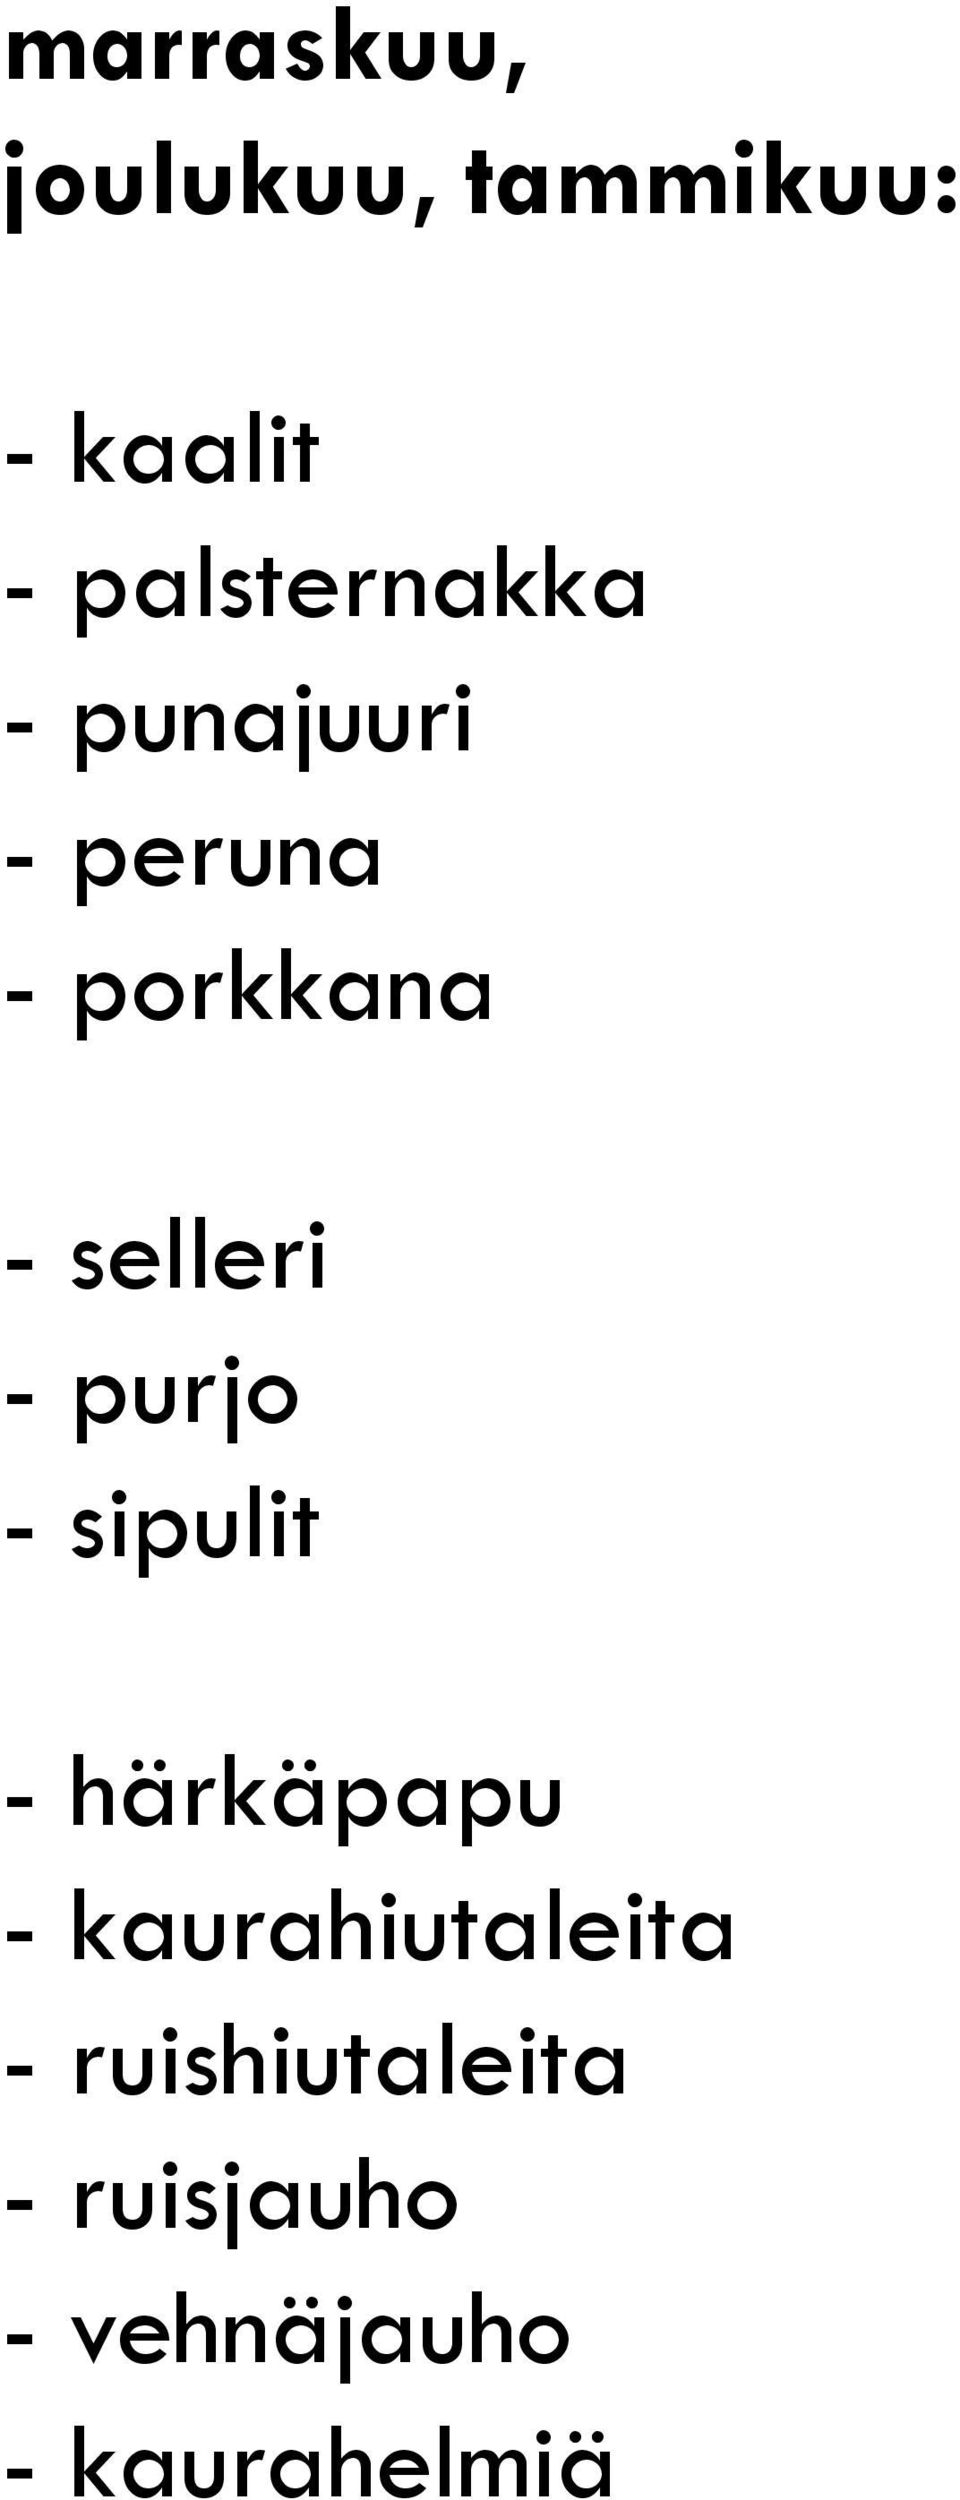 selleri - purjo - sipulit - härkäpapu -